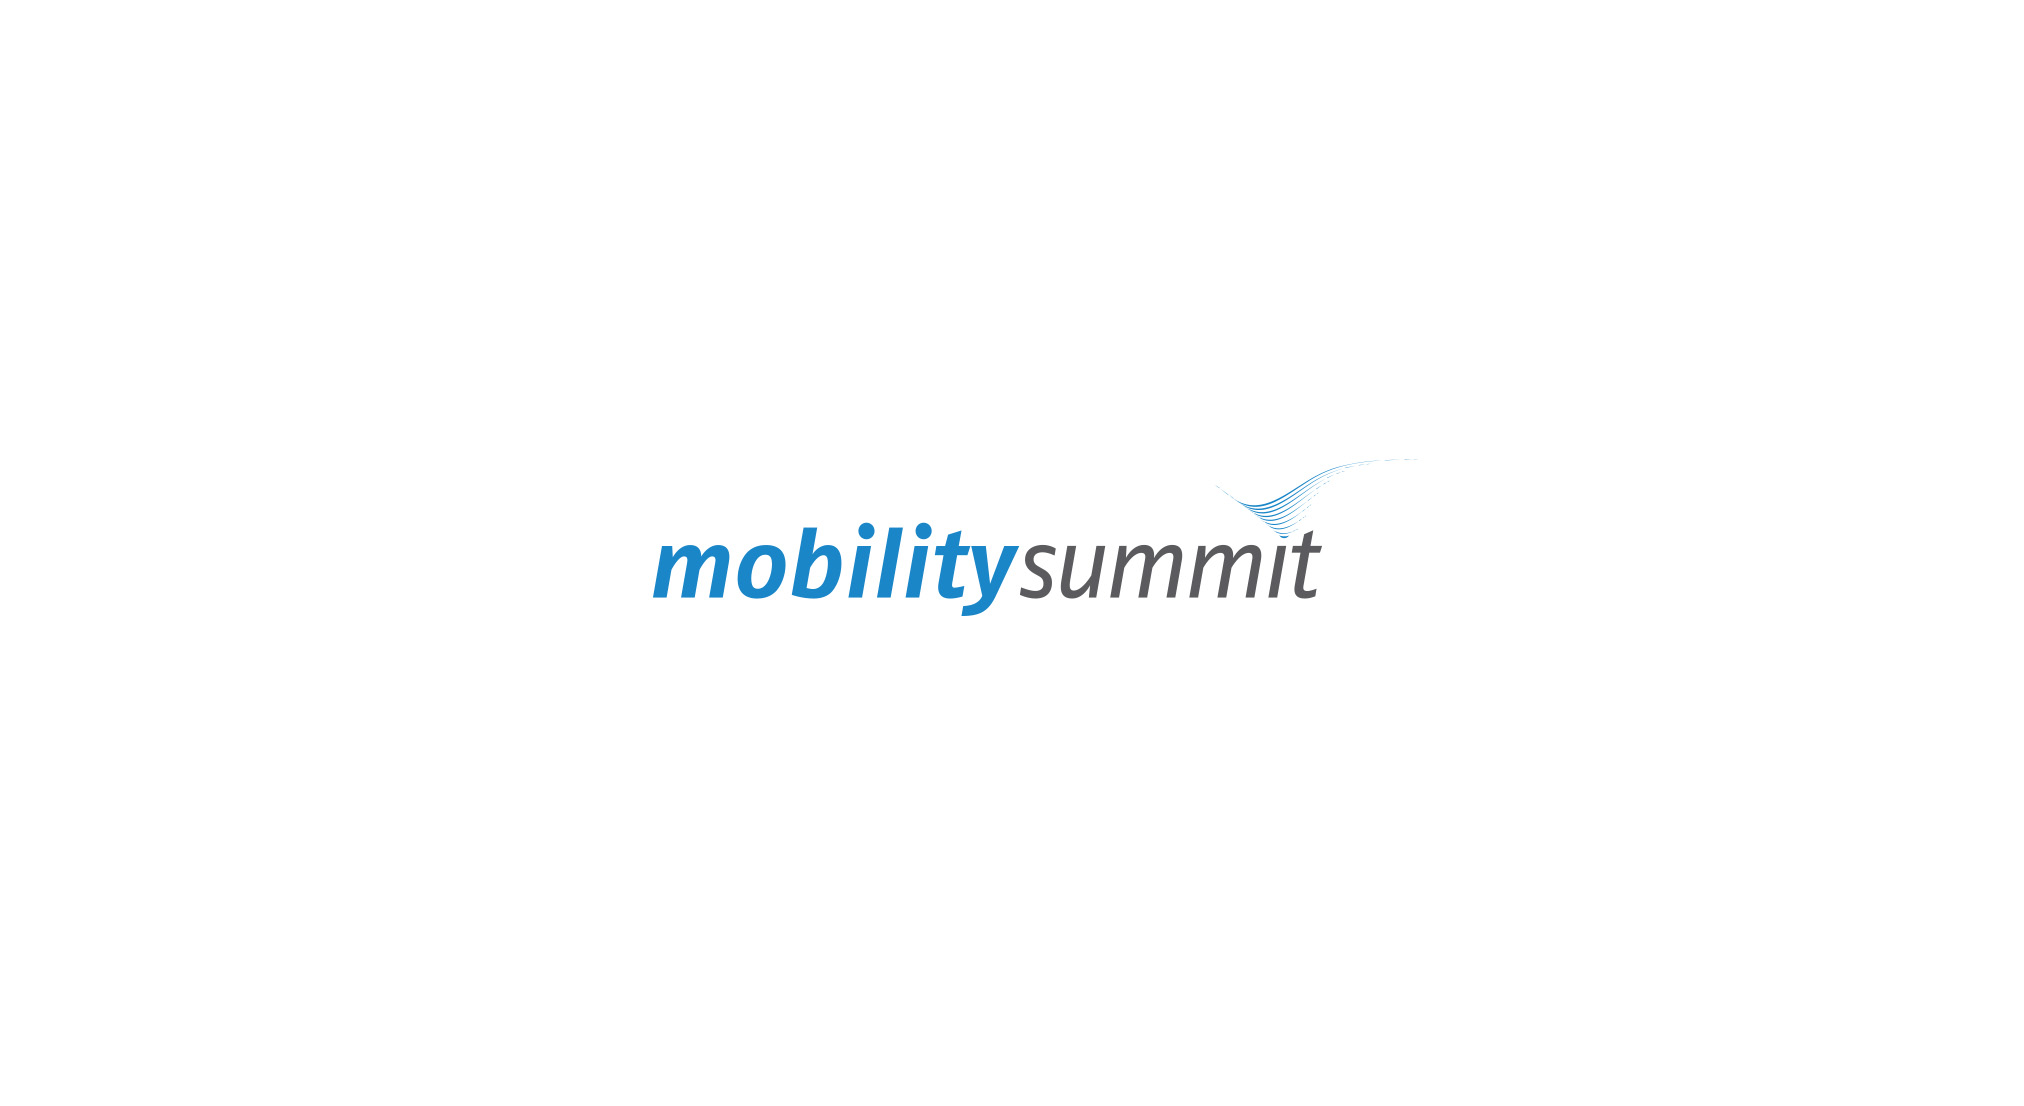 mobility summit, Groteskschriftzug in grau und blau mit zarten Wellen statt dem letzten i Punkt